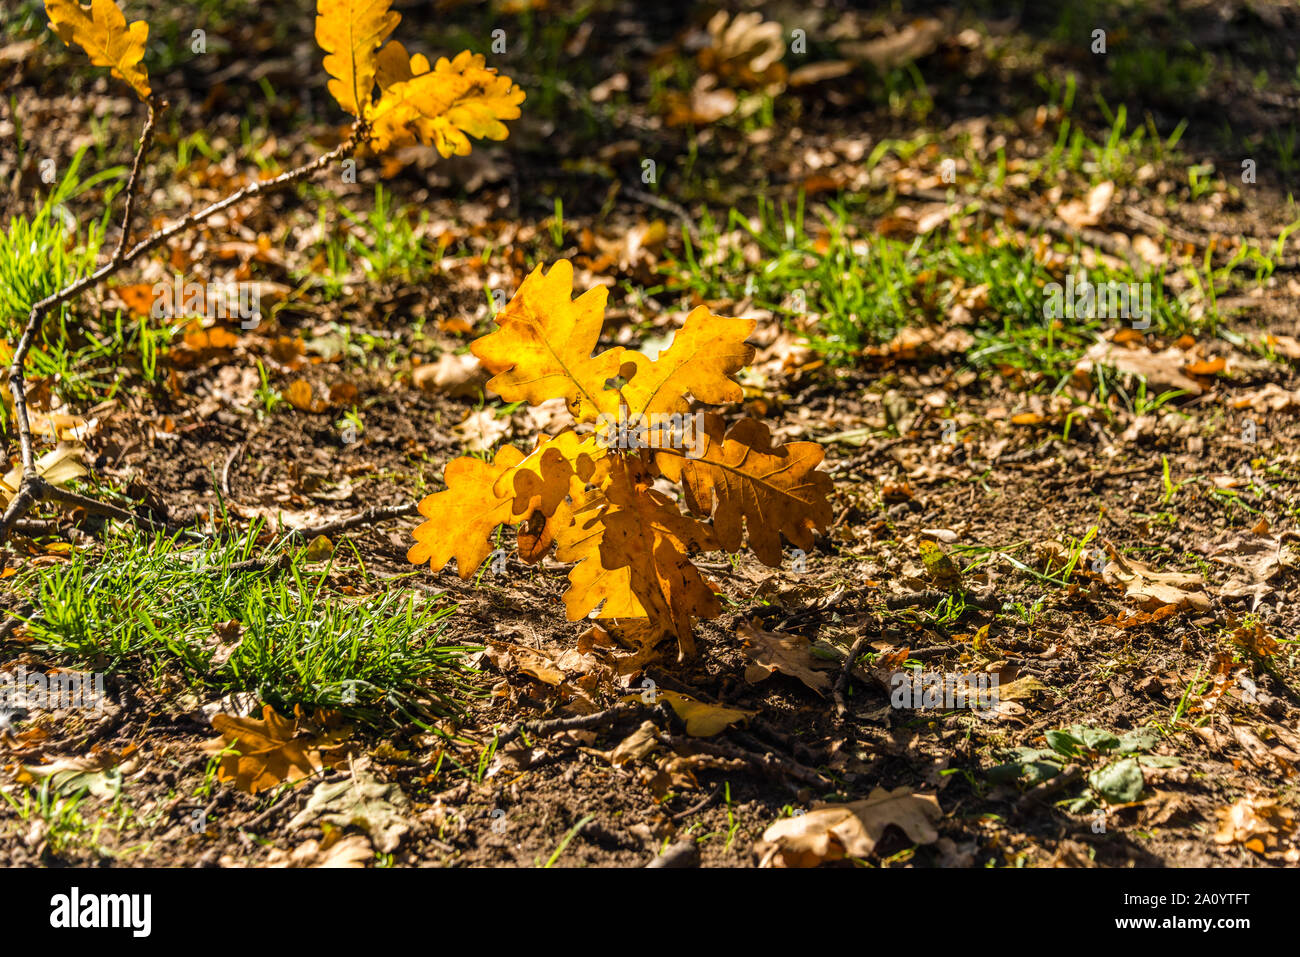 Autunno in scena con rosso giallo marrone e arancione i colori delle stagioni dall'estate all'inverno in autunno di foglie morte sul terreno in terra di legno Foto Stock